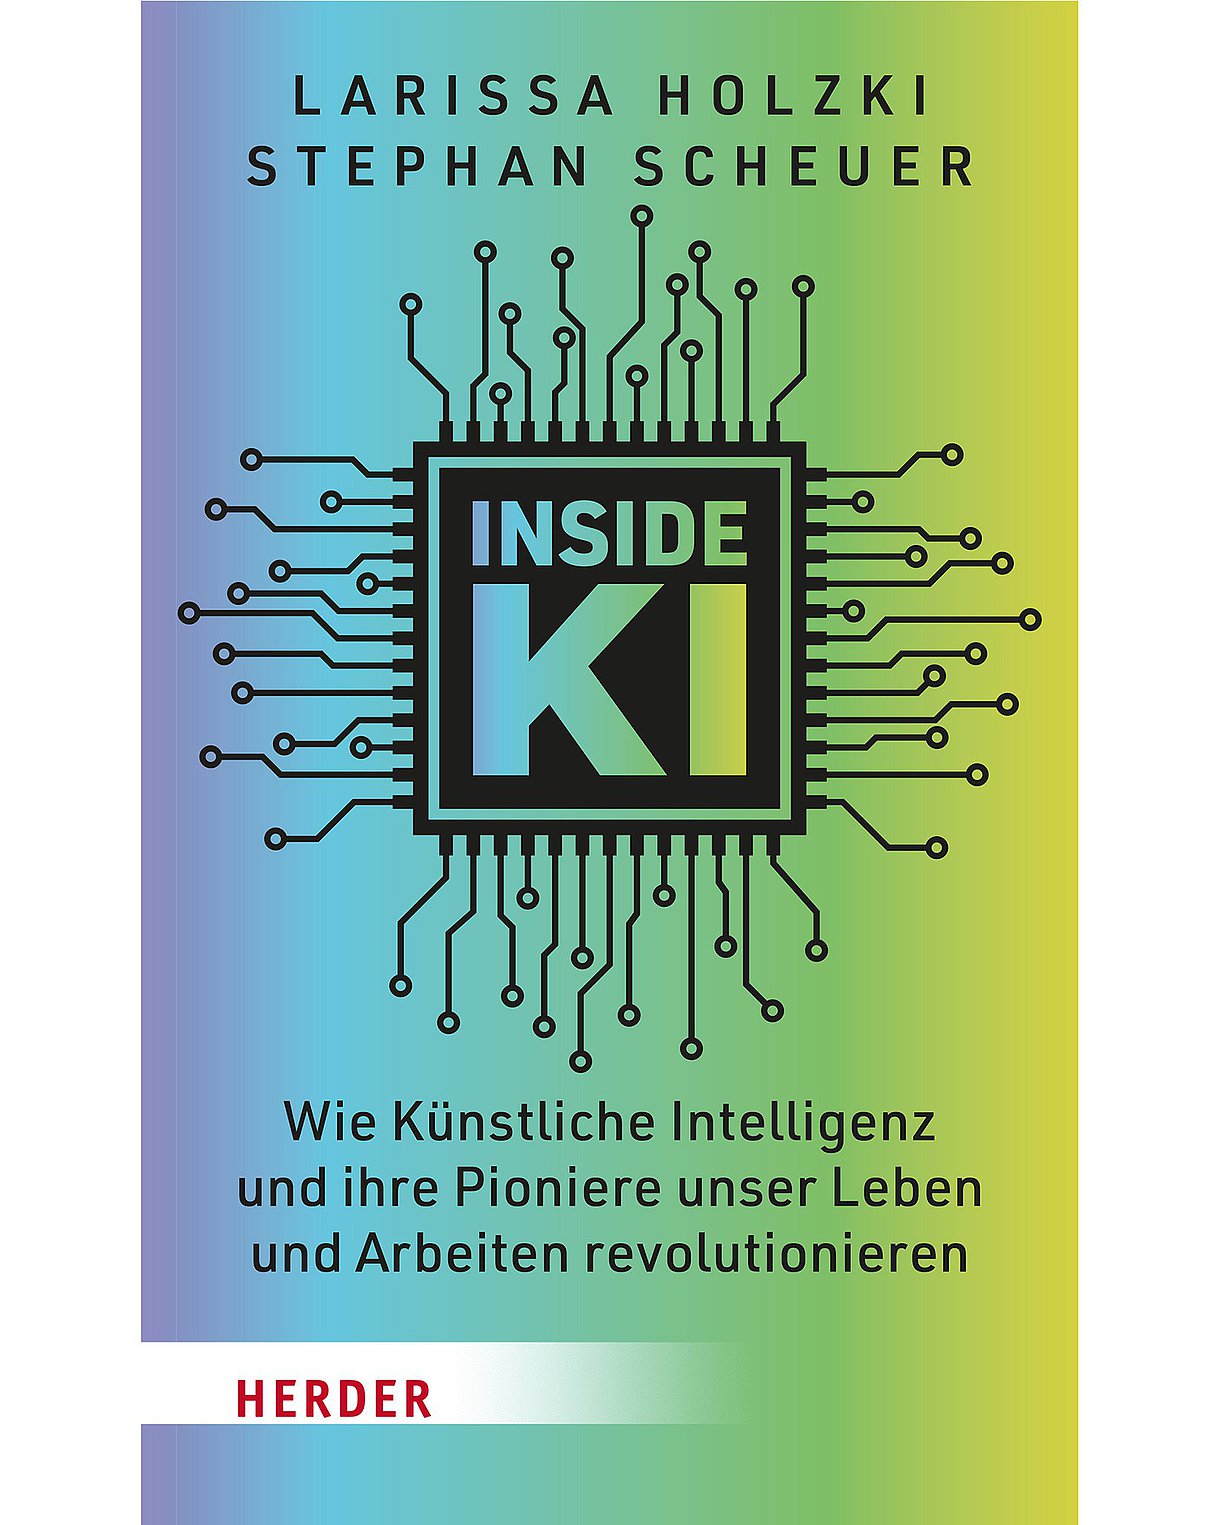 Cover des Buches "Inside KI" mit einem bunten Farbverlau von links nach rechts in Lila über Blau bis Grün und Gelb. In der Mitte steht der Titel auf einer Leiterplatte